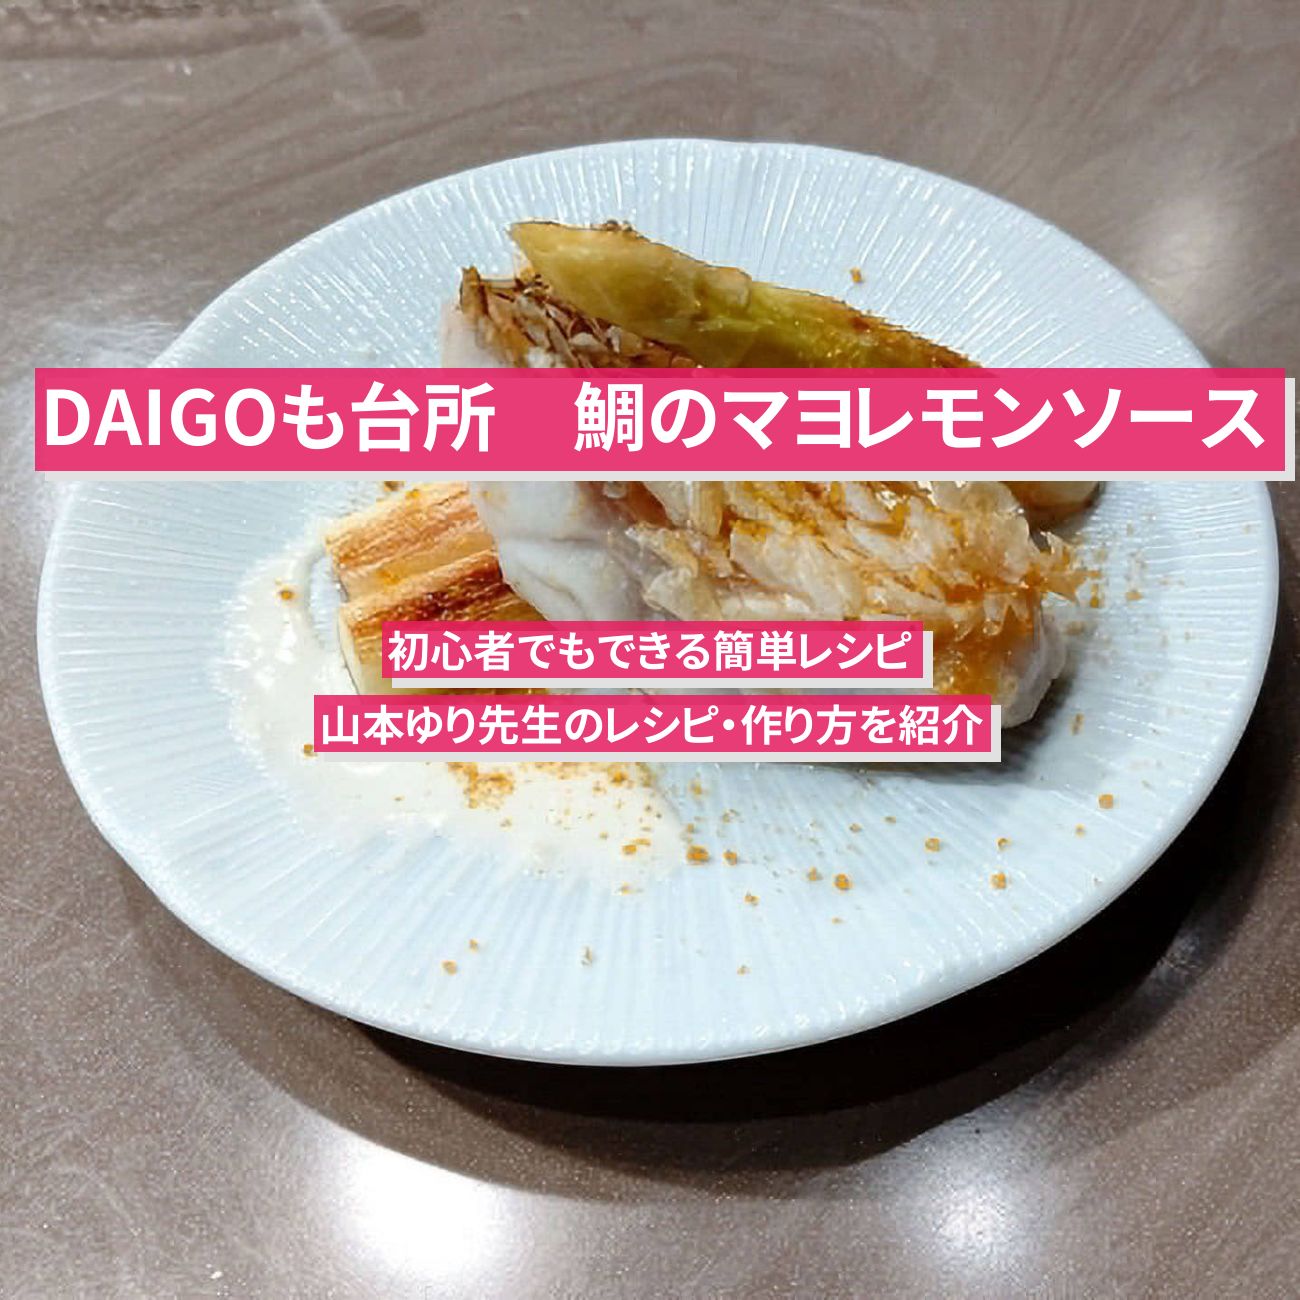 【DAIGOも台所】『鯛のマヨレモンソース』山本ゆり先生のレシピ・作り方を紹介〔ダイゴも台所〕